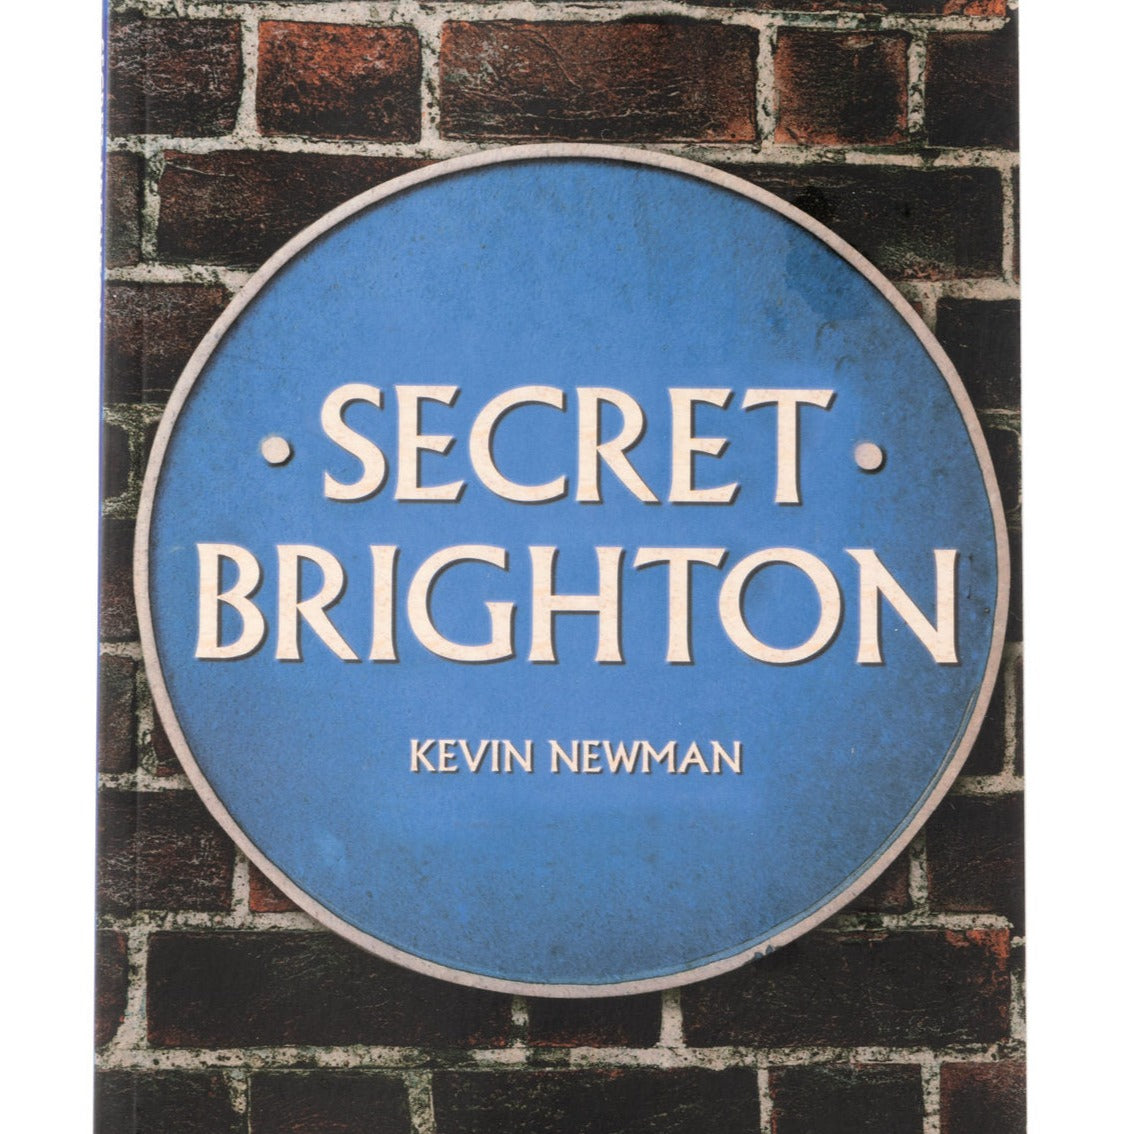 Secret Brighton